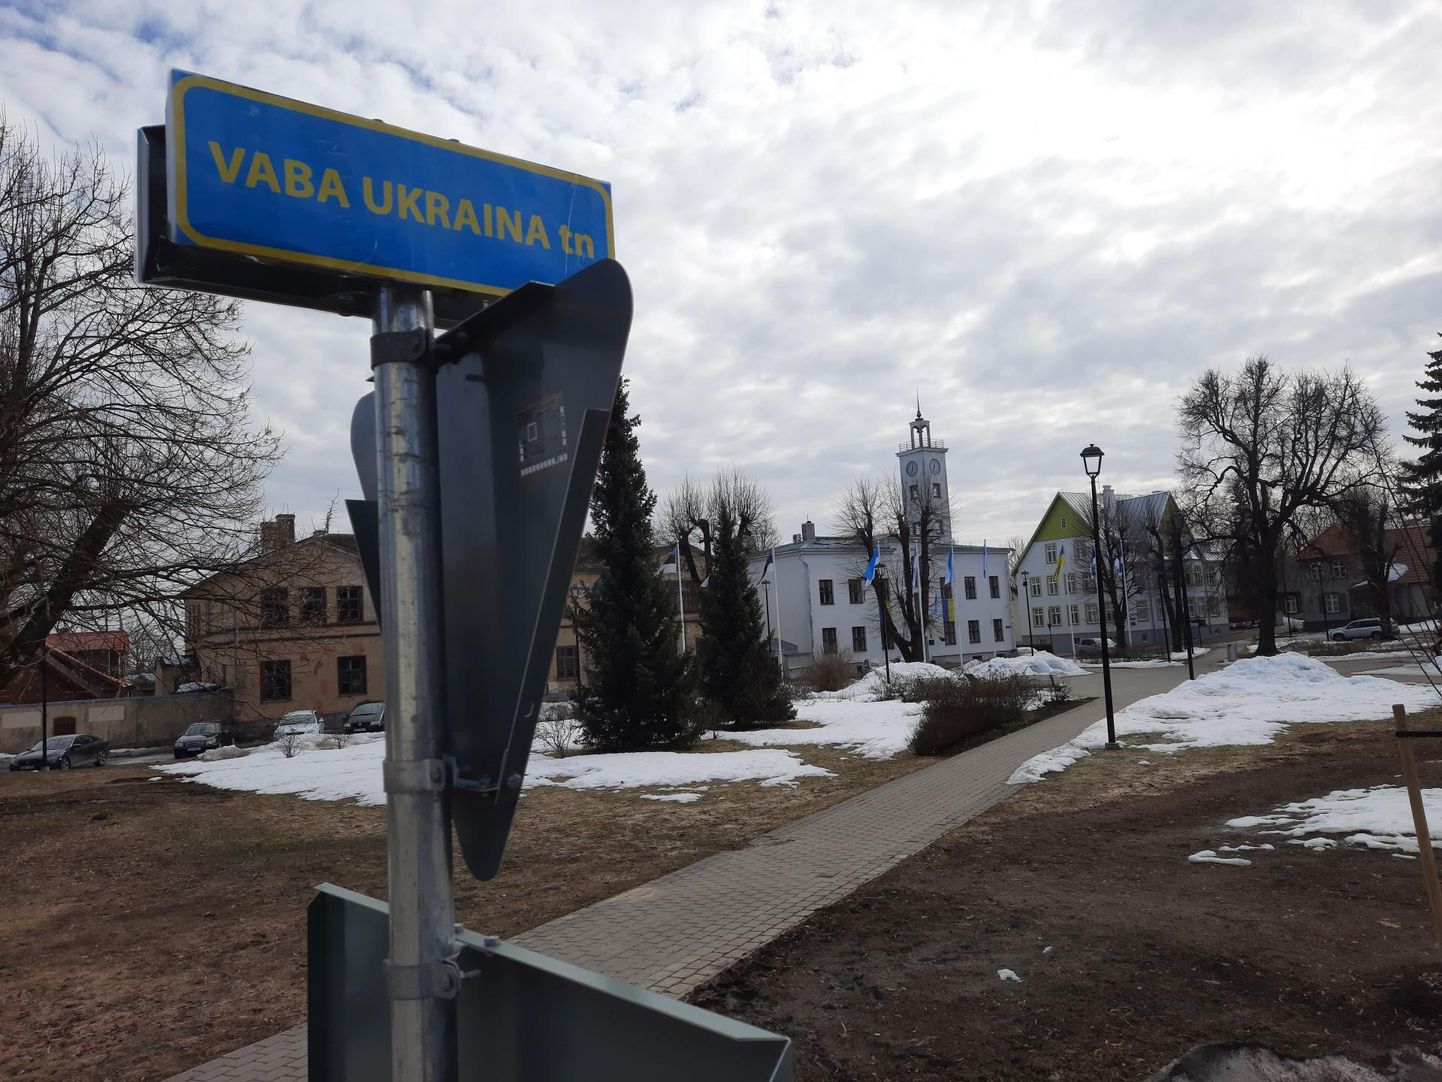 Raekojaesise pargi äärde tekkis silt, mis annab teada, et seal on Vaba Ukraina tänava. Ametlikult sellist tänavat Viljandis siiski ei ole.